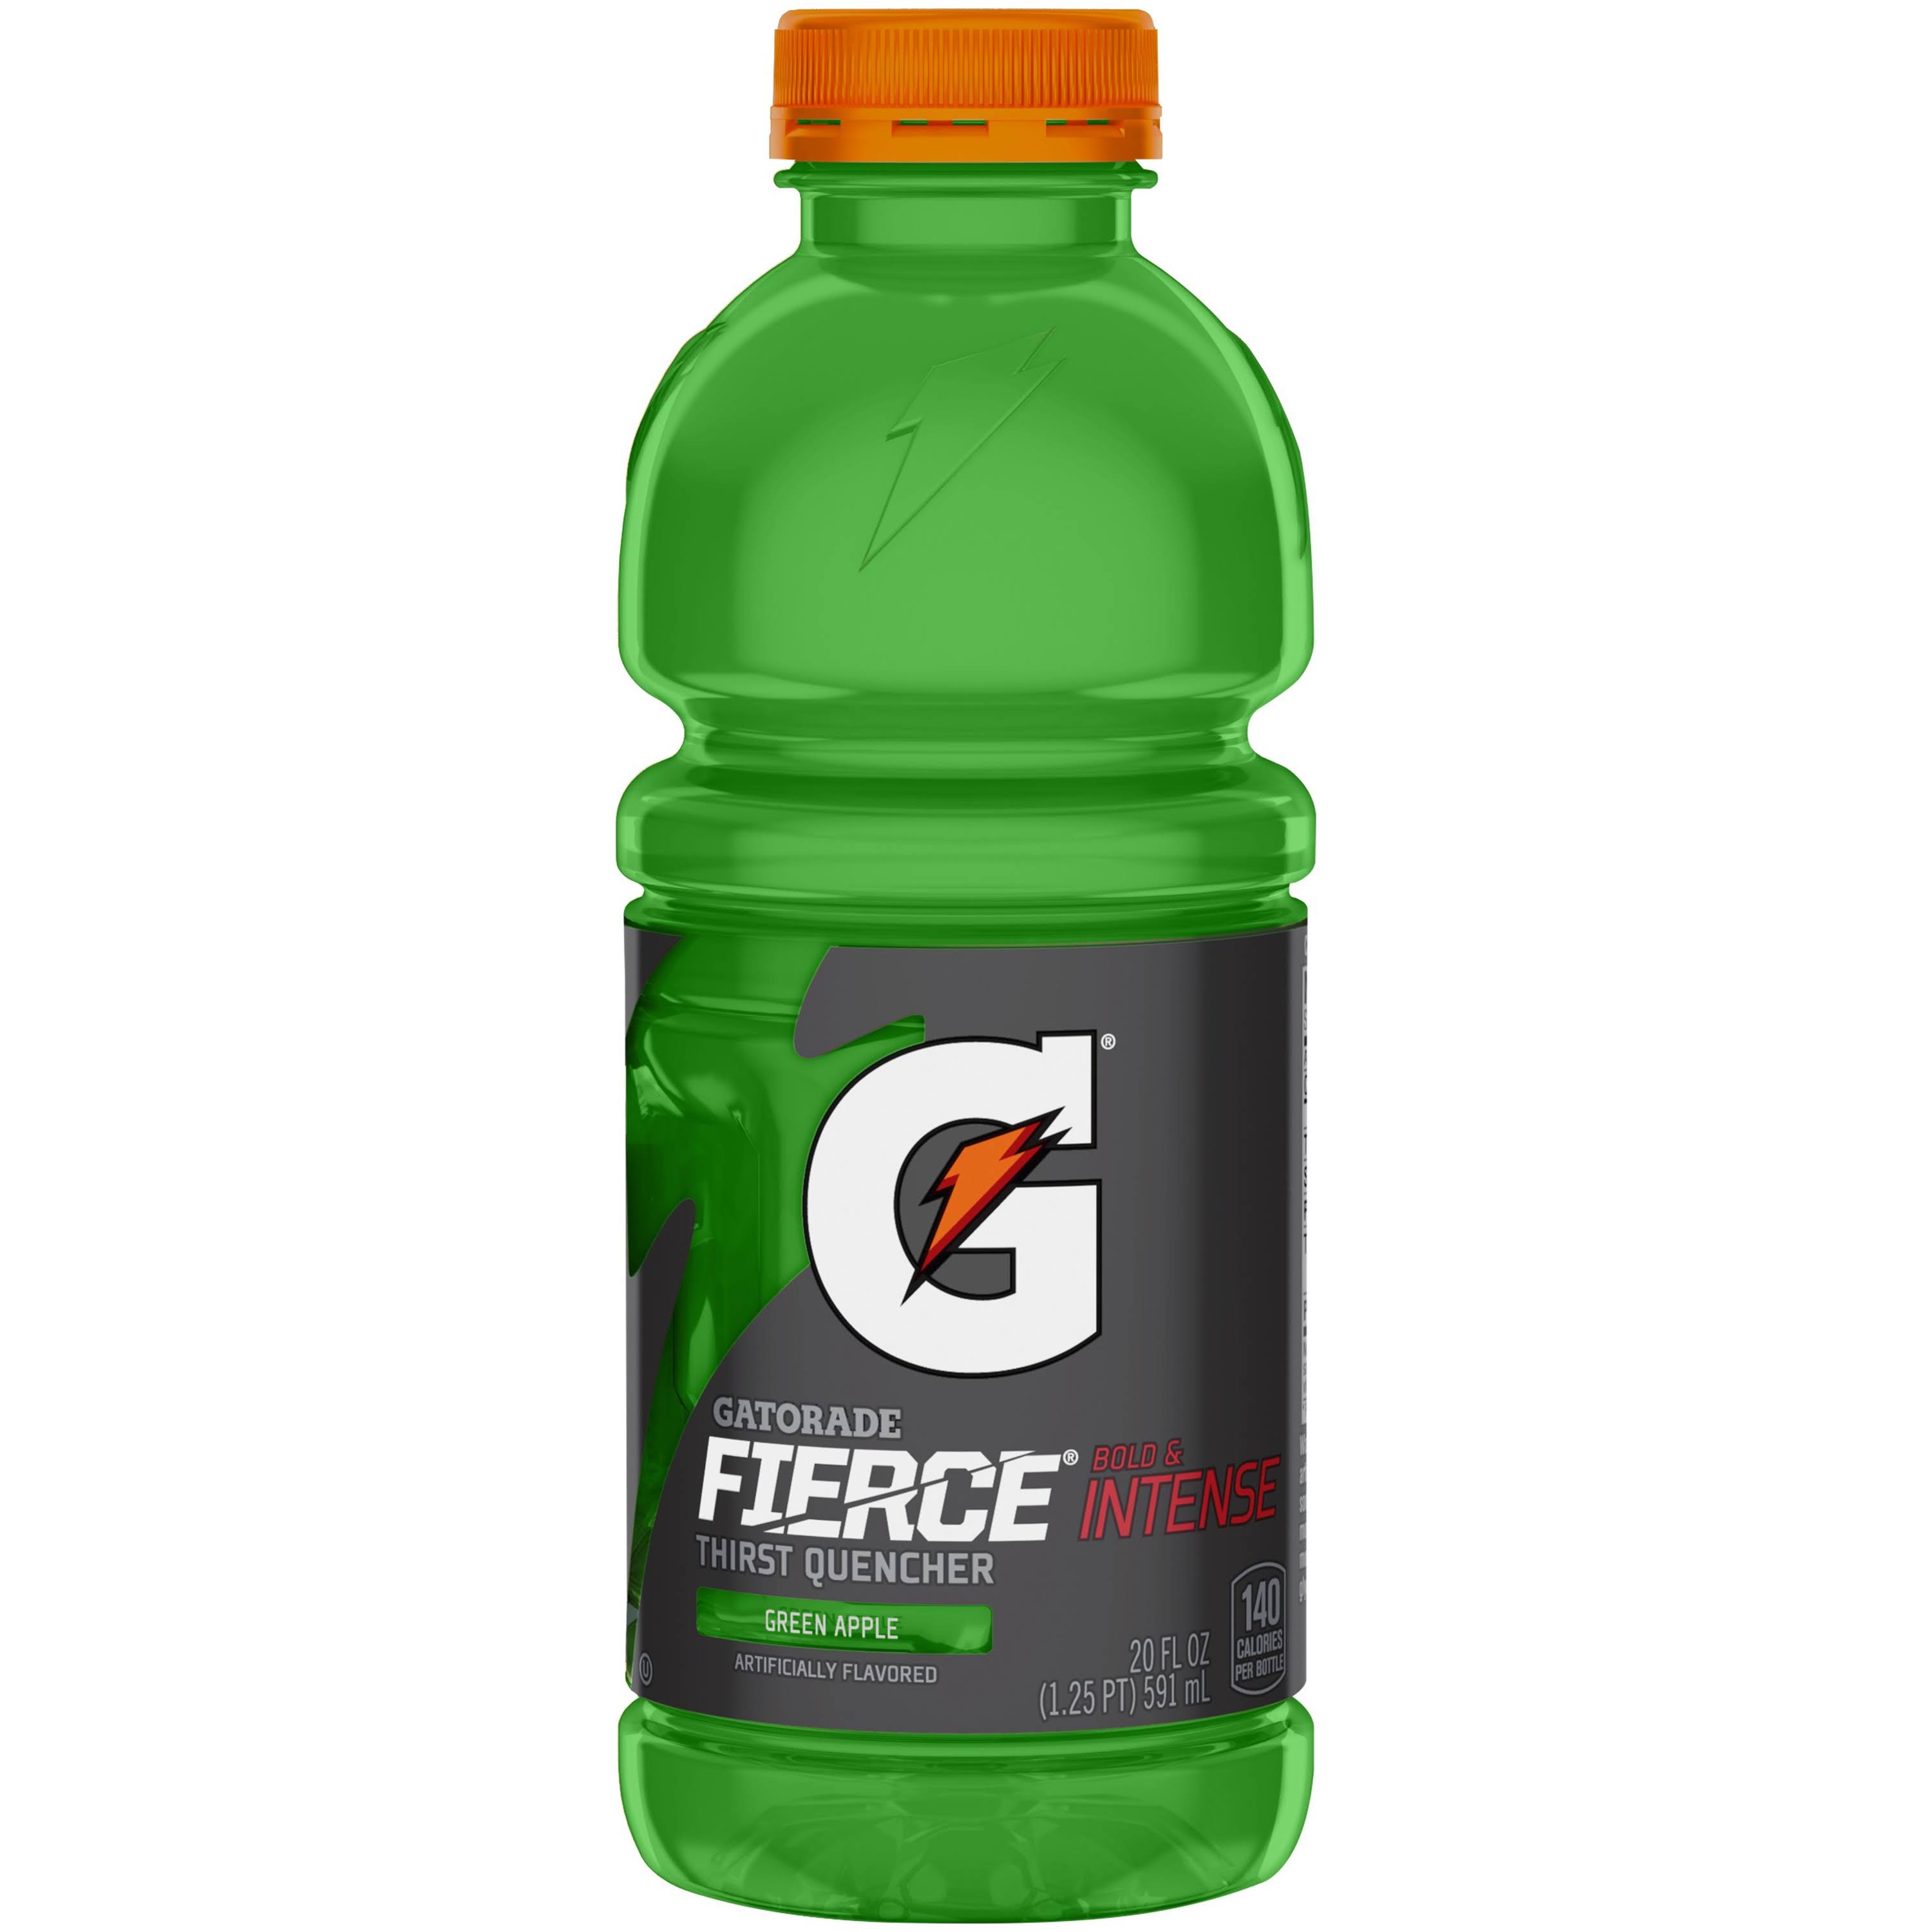 Gatorade Fierce Thirst Quencher, Green Apple - 20 fl oz bottle